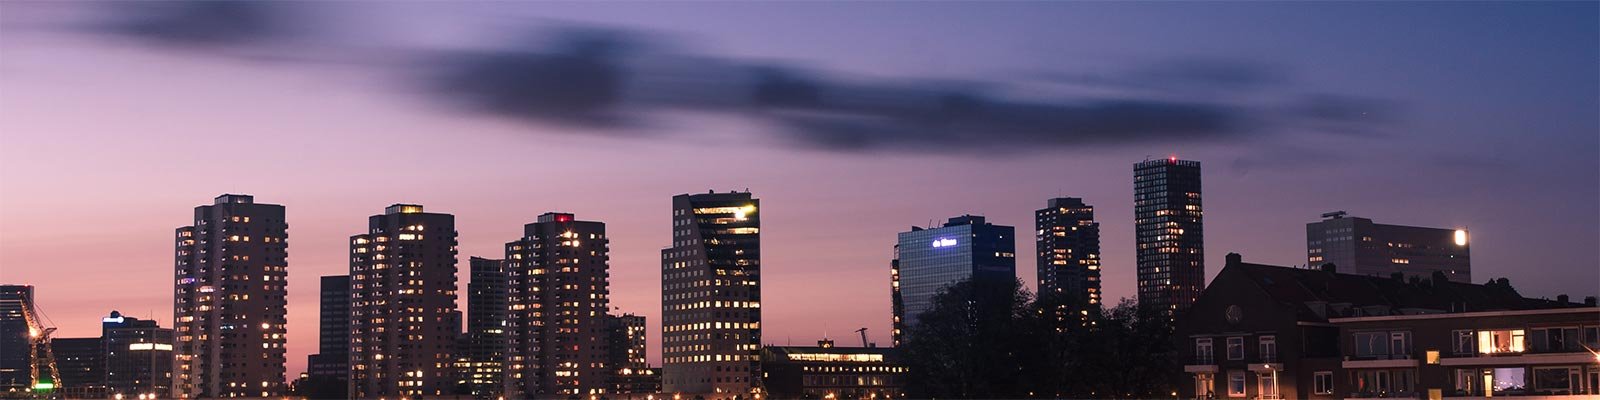 Skyline van Rotterdam met hoogbouw